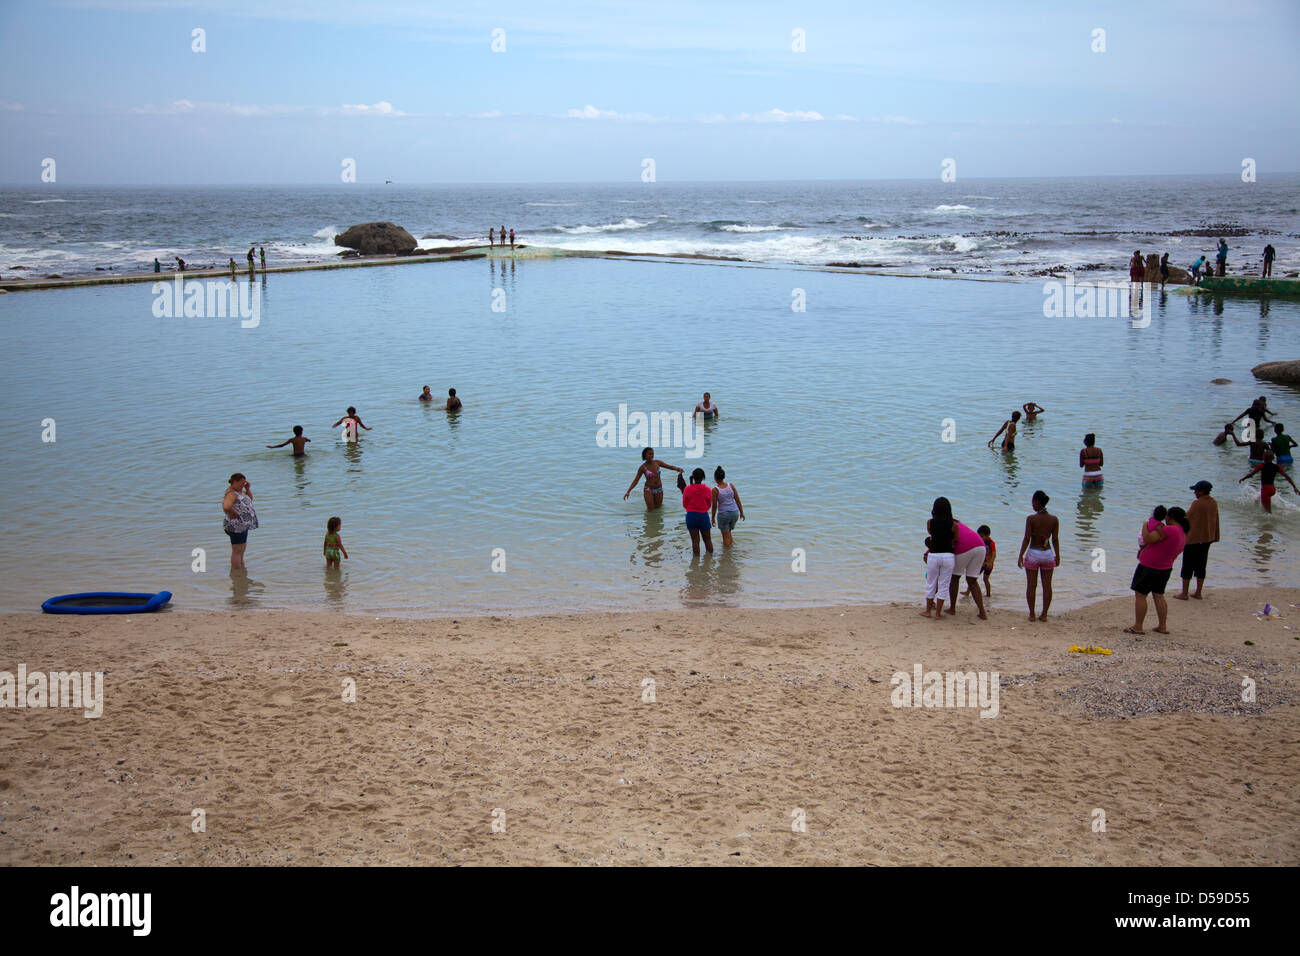 Einheimischen schwimmen in Camps Bay Tidal Pool in Kapstadt - Südafrika  Stockfotografie - Alamy